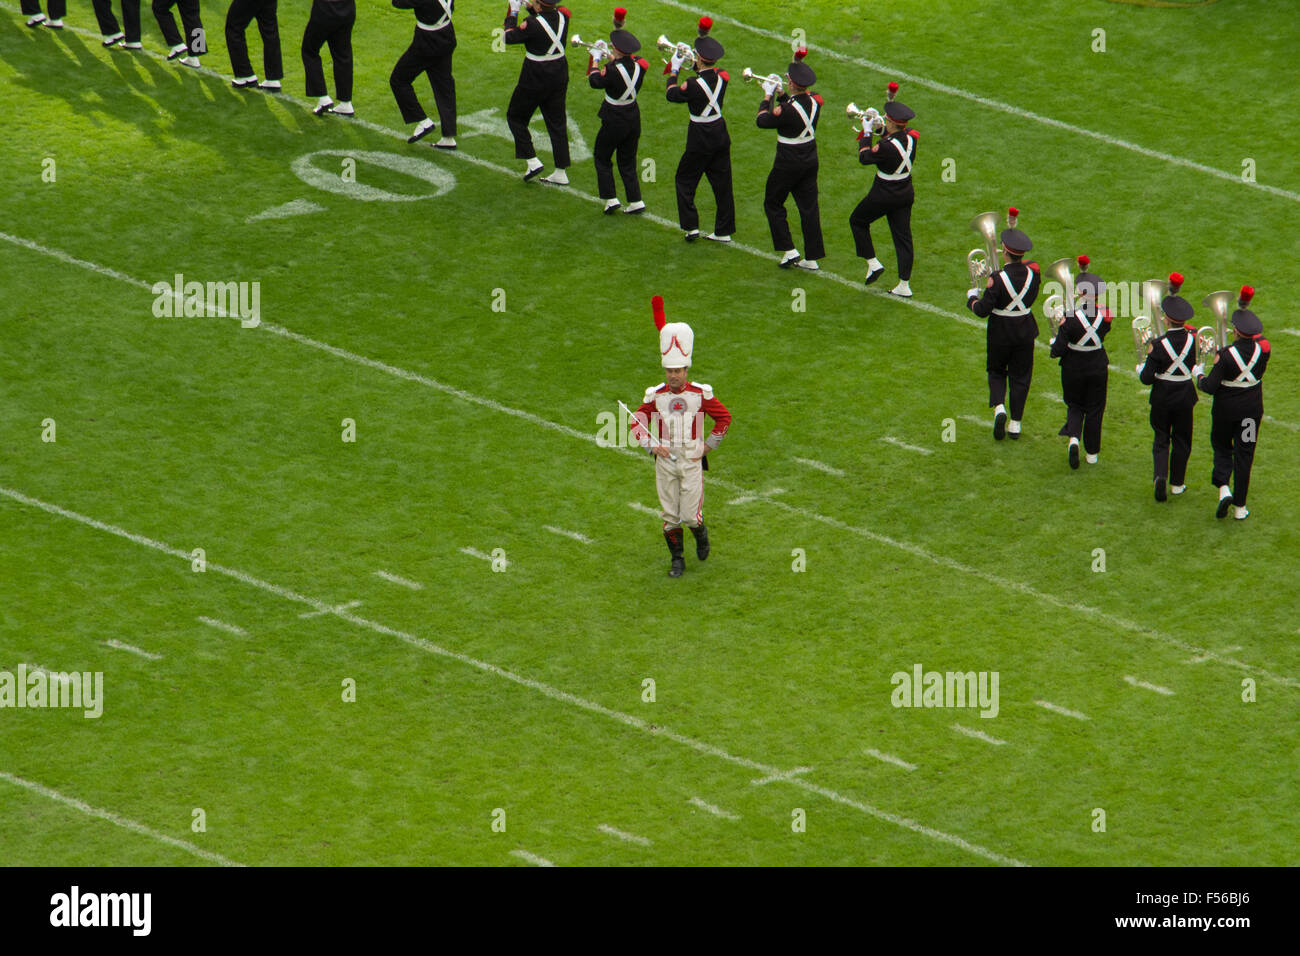 Ohio Landesuniversität marschierendes Band in der Wembley Arena für NFL Stockfoto